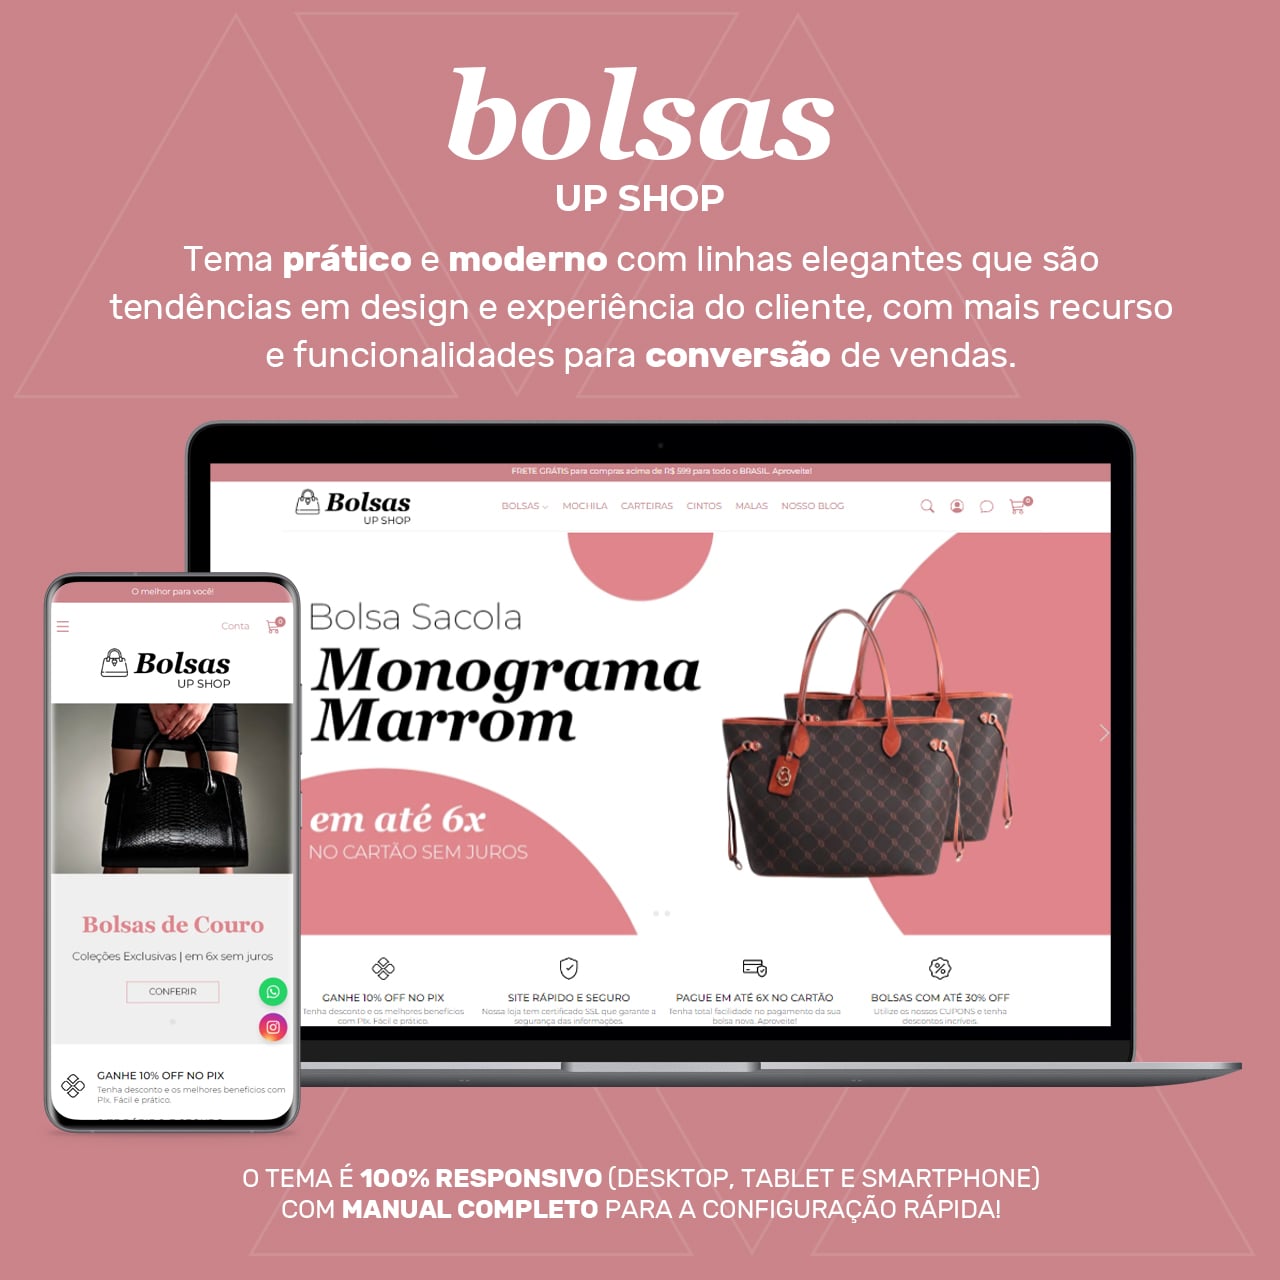 Bolsas - Up Shop